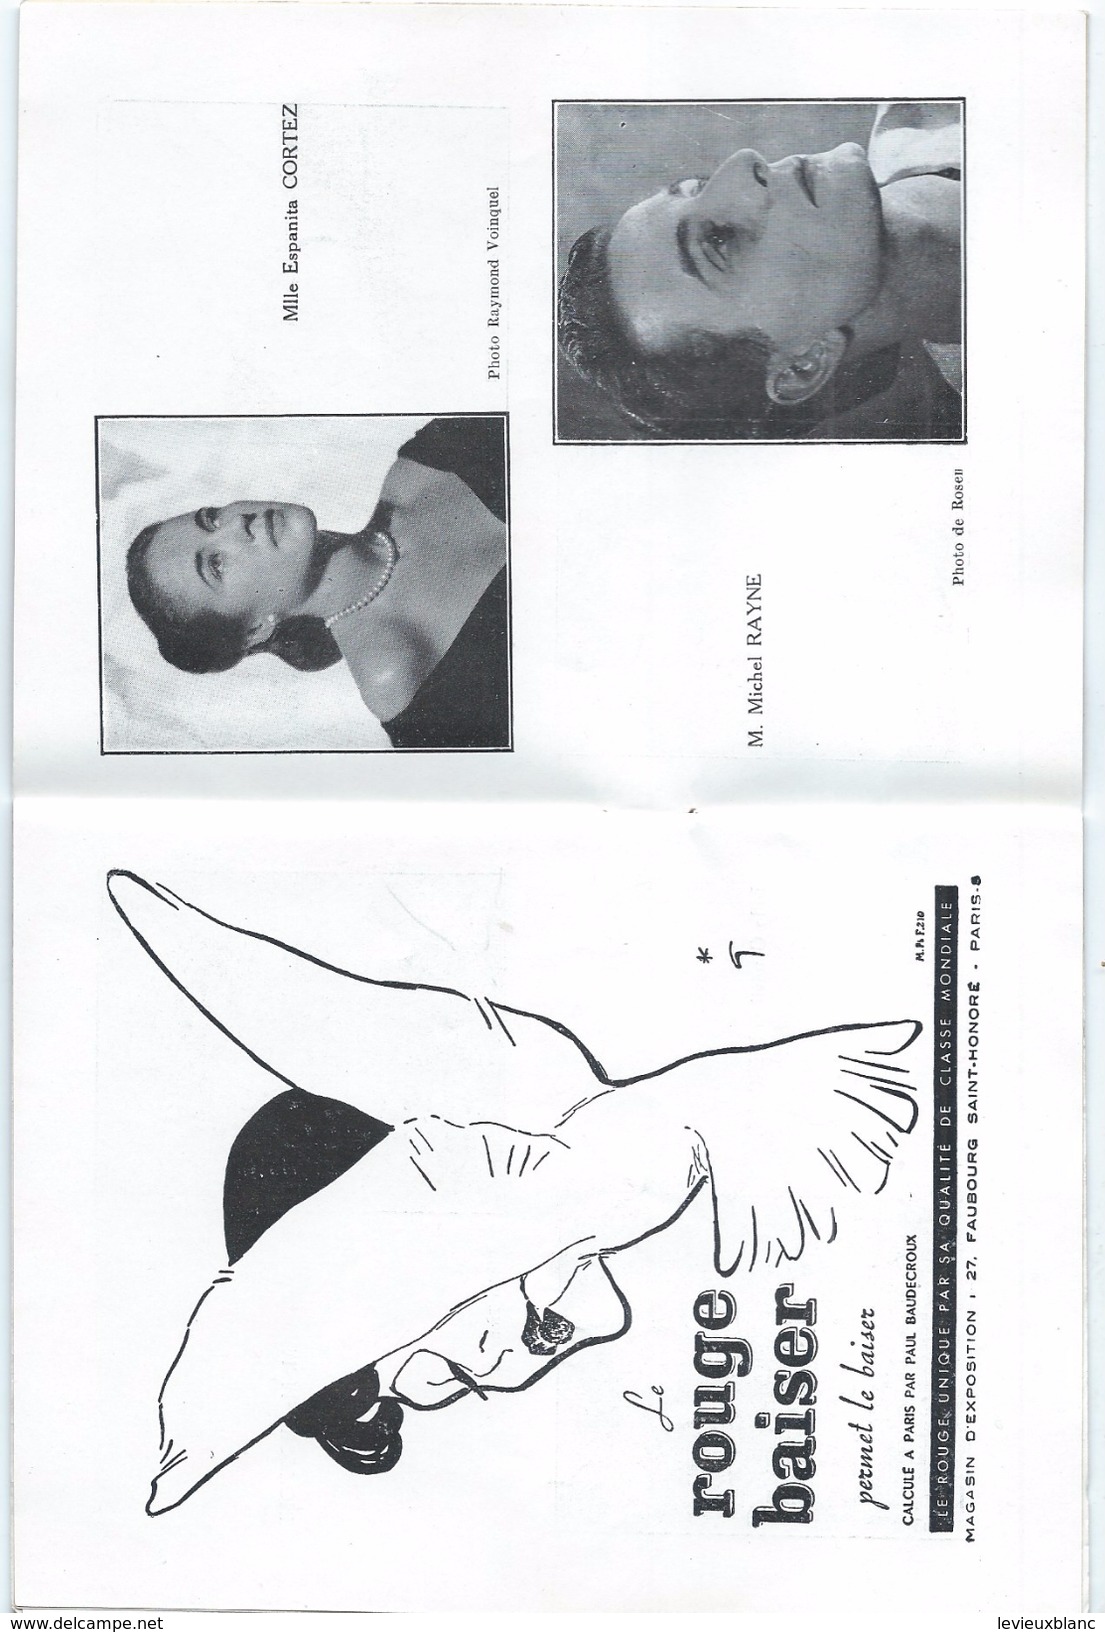 Programme/Théâtres Lyriques Nationaux/Opéra Comique/Palais De Chaillot/Gala Chorégraphiques/Serge Lifar/1951   PROG112 - Programma's